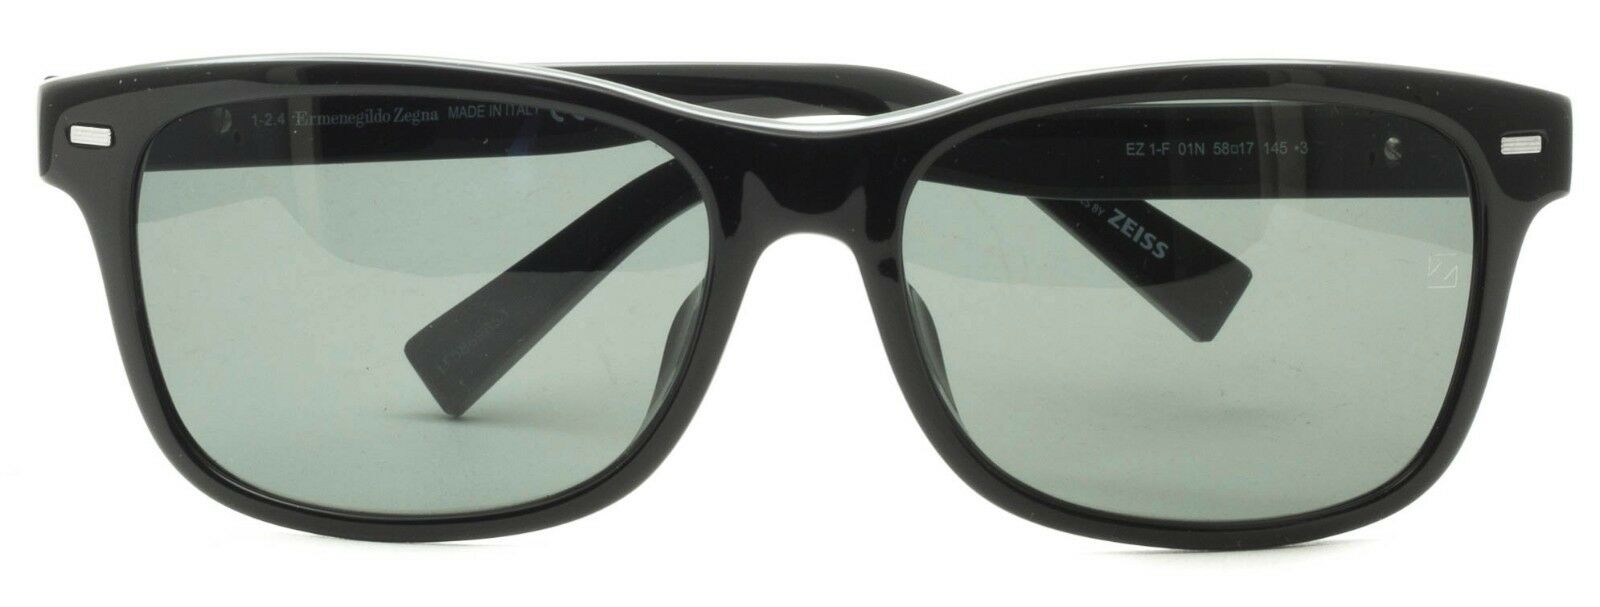 Ermenegildo Zegna EZ-1-F 01N Sunglasses Shades Glasses 100% UV New BNIB - Italy